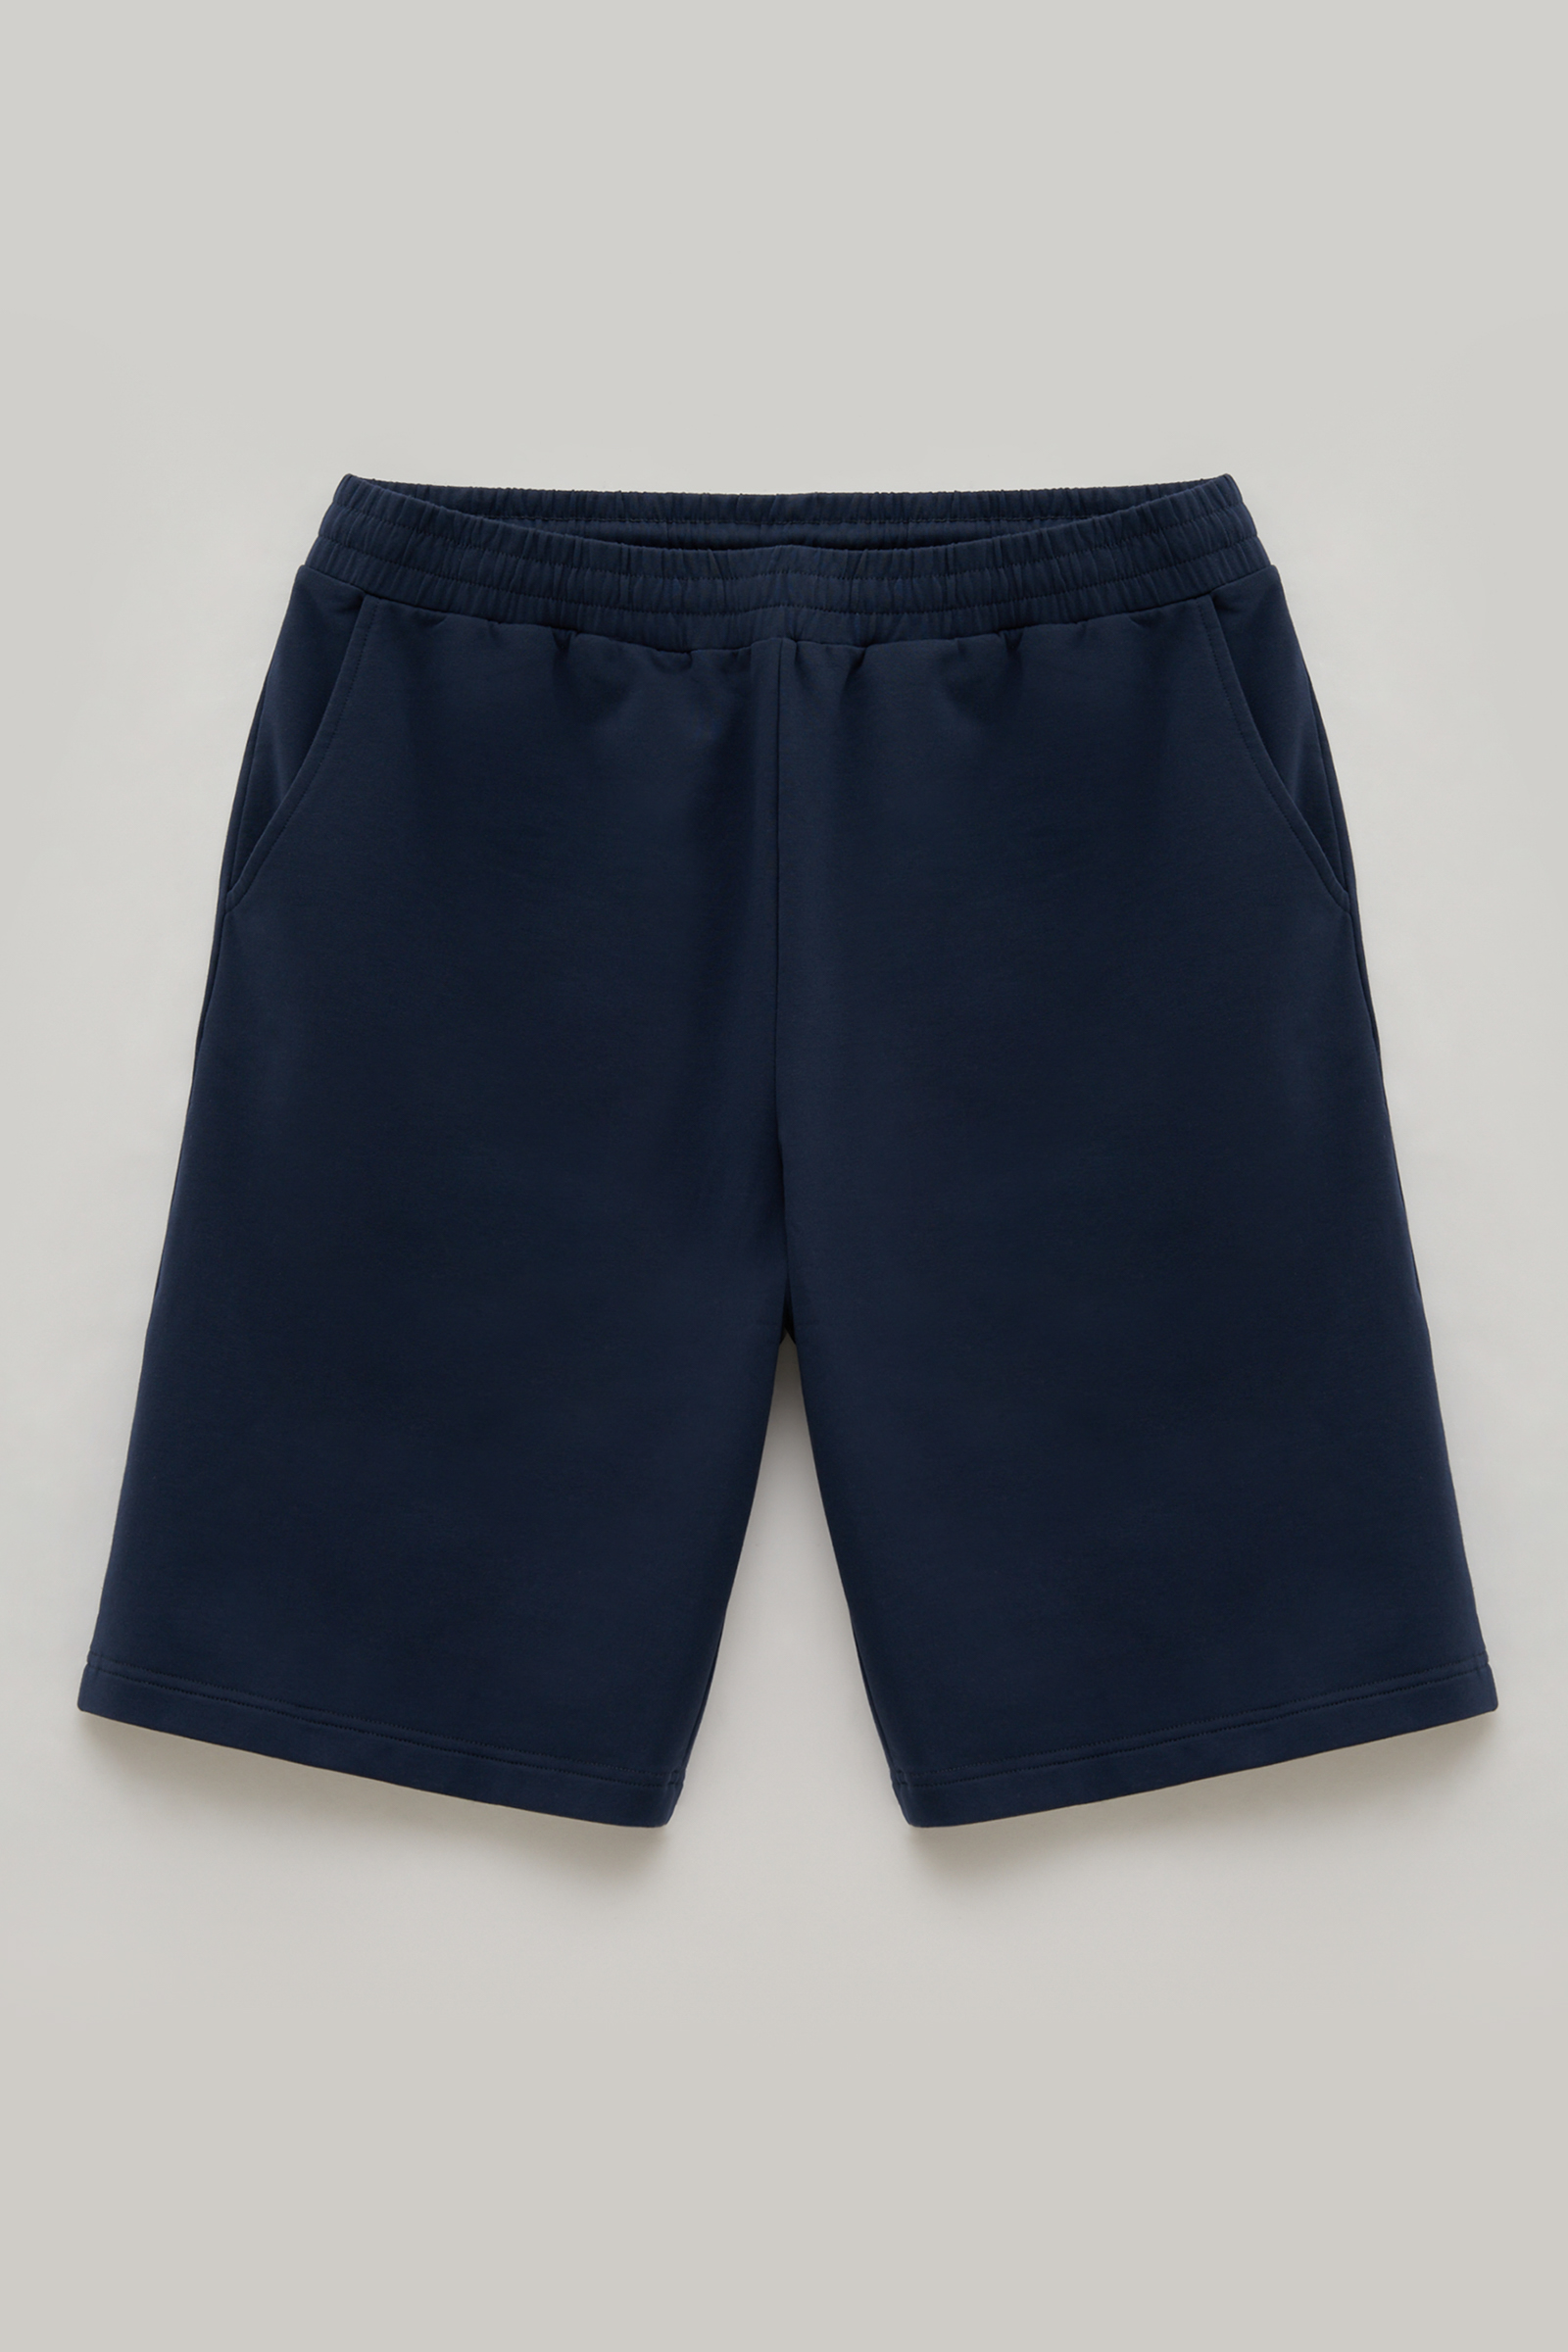 Повседневные шорты мужские Finn Flare FSE21033 синие M